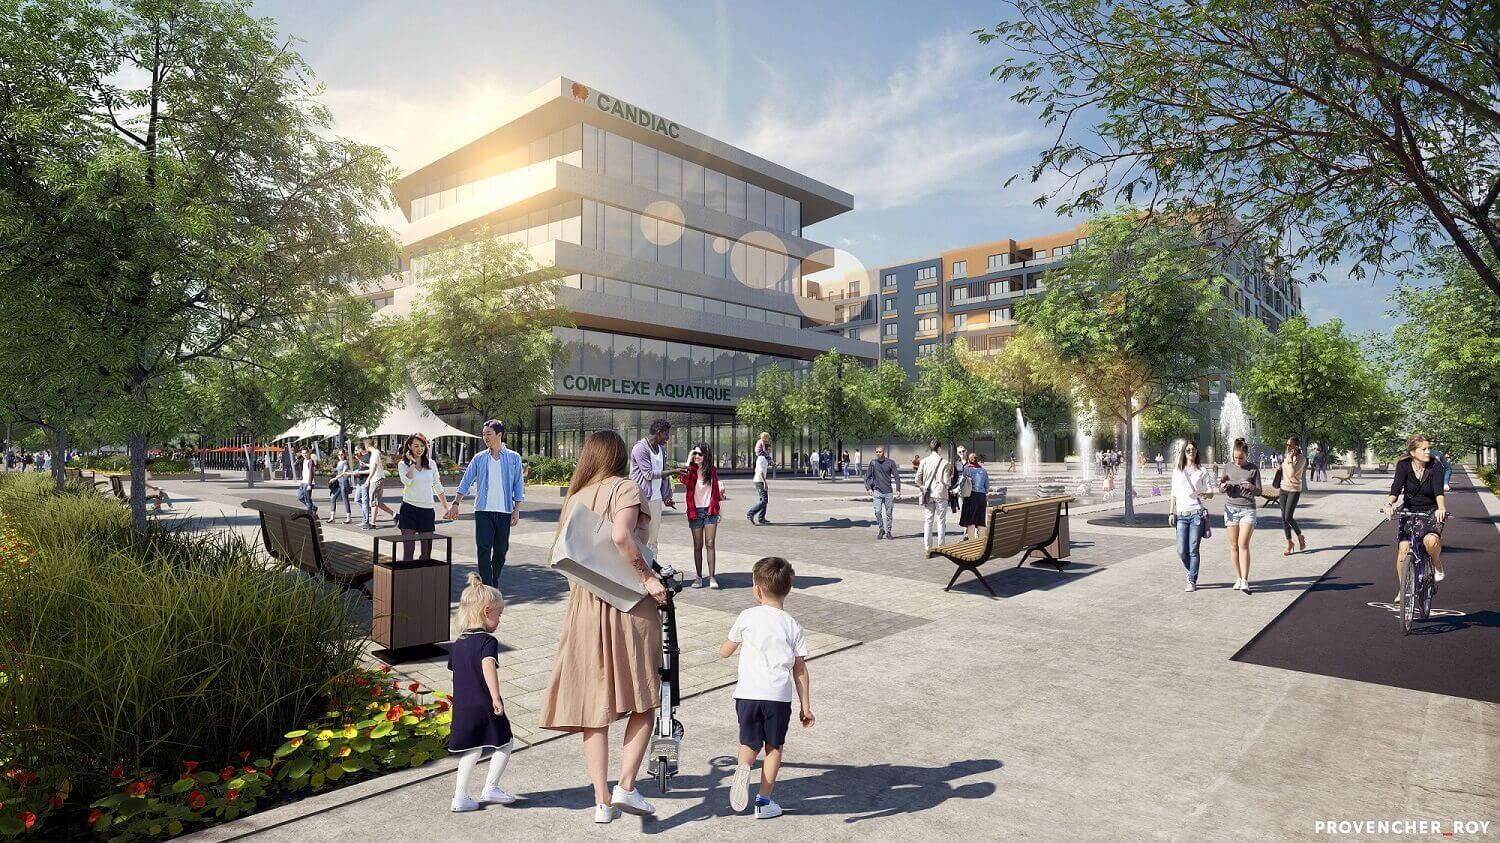 <ul>
<li>Le futur centre-ville Montcalm</li>
<li>Pourquoi le centre-ville dans le secteur du boulevard Montcalm</li>
<li>La vision du futur centre-ville</li>
<li>Le centre-ville Montcalm, une transformation entamée en 2015</li>
<li>Le trait d'union entre le passé et le futur</li>
</ul>